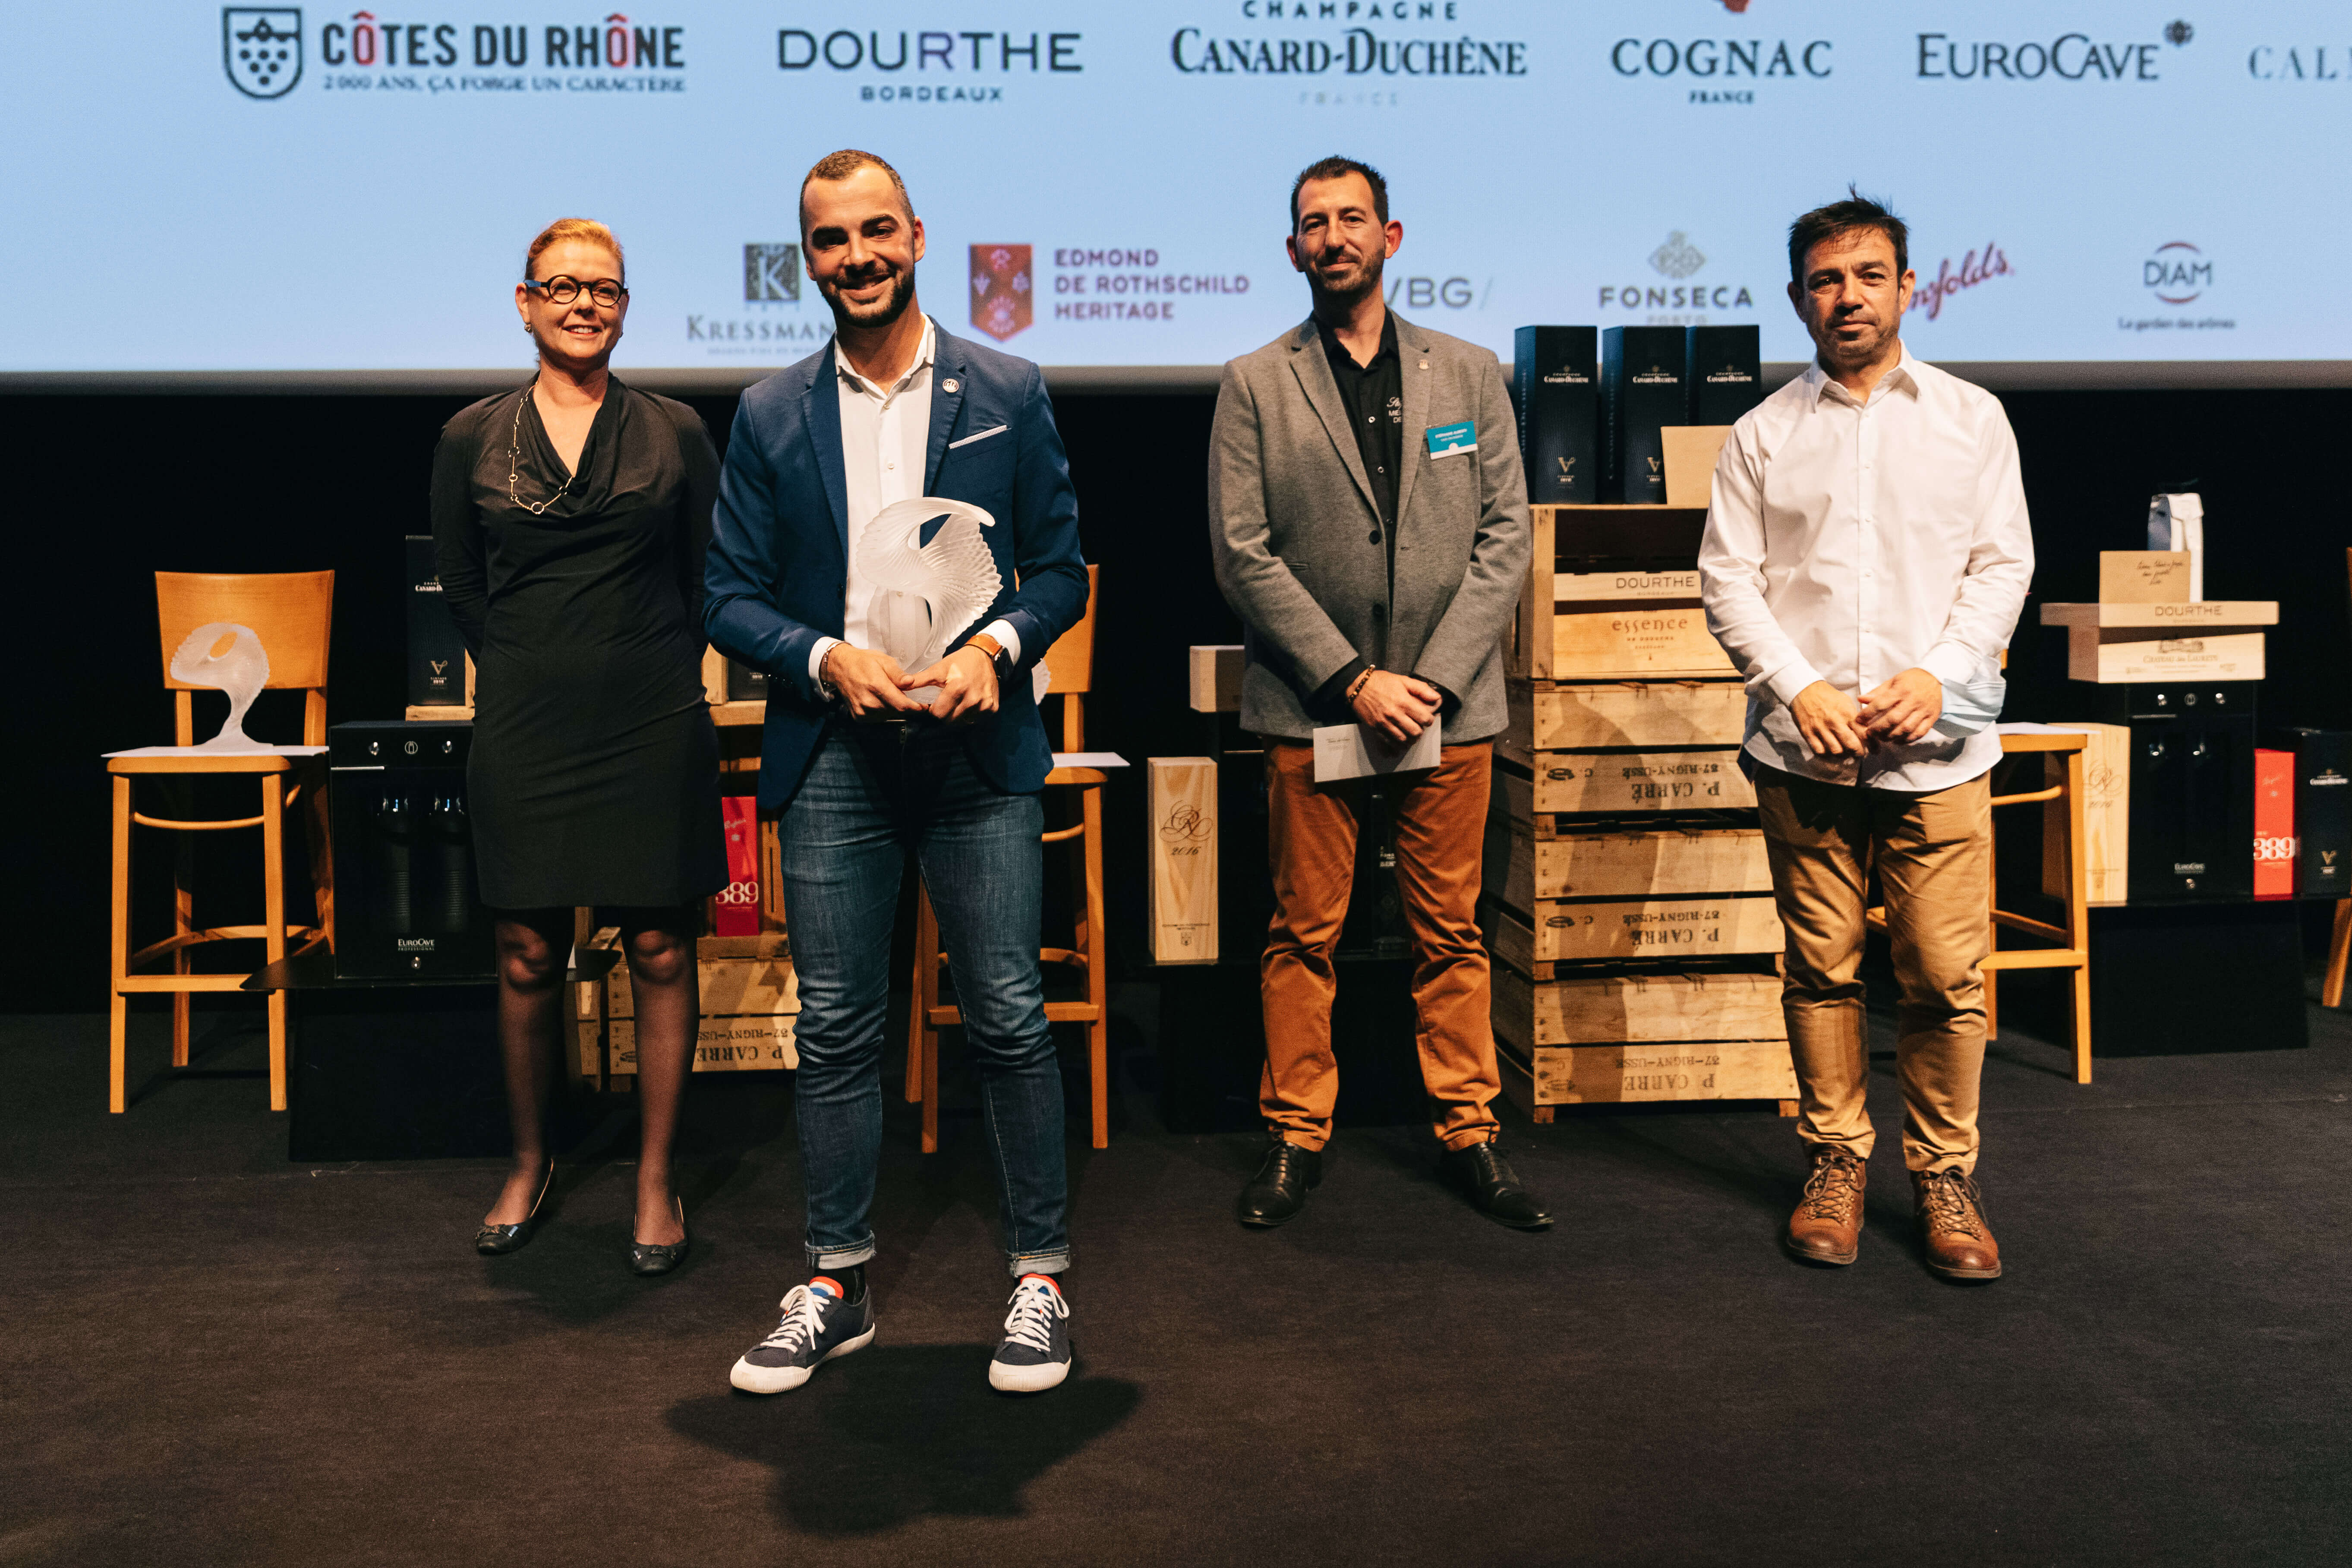 Remise prix Meilleur jeune caviste de France à A. ZAOUK par les partenaires Calmels & Joseph (H van den Akker & J Camps) avec S ALBERTI (MCF 2014)
crédit : Solène Guillaud